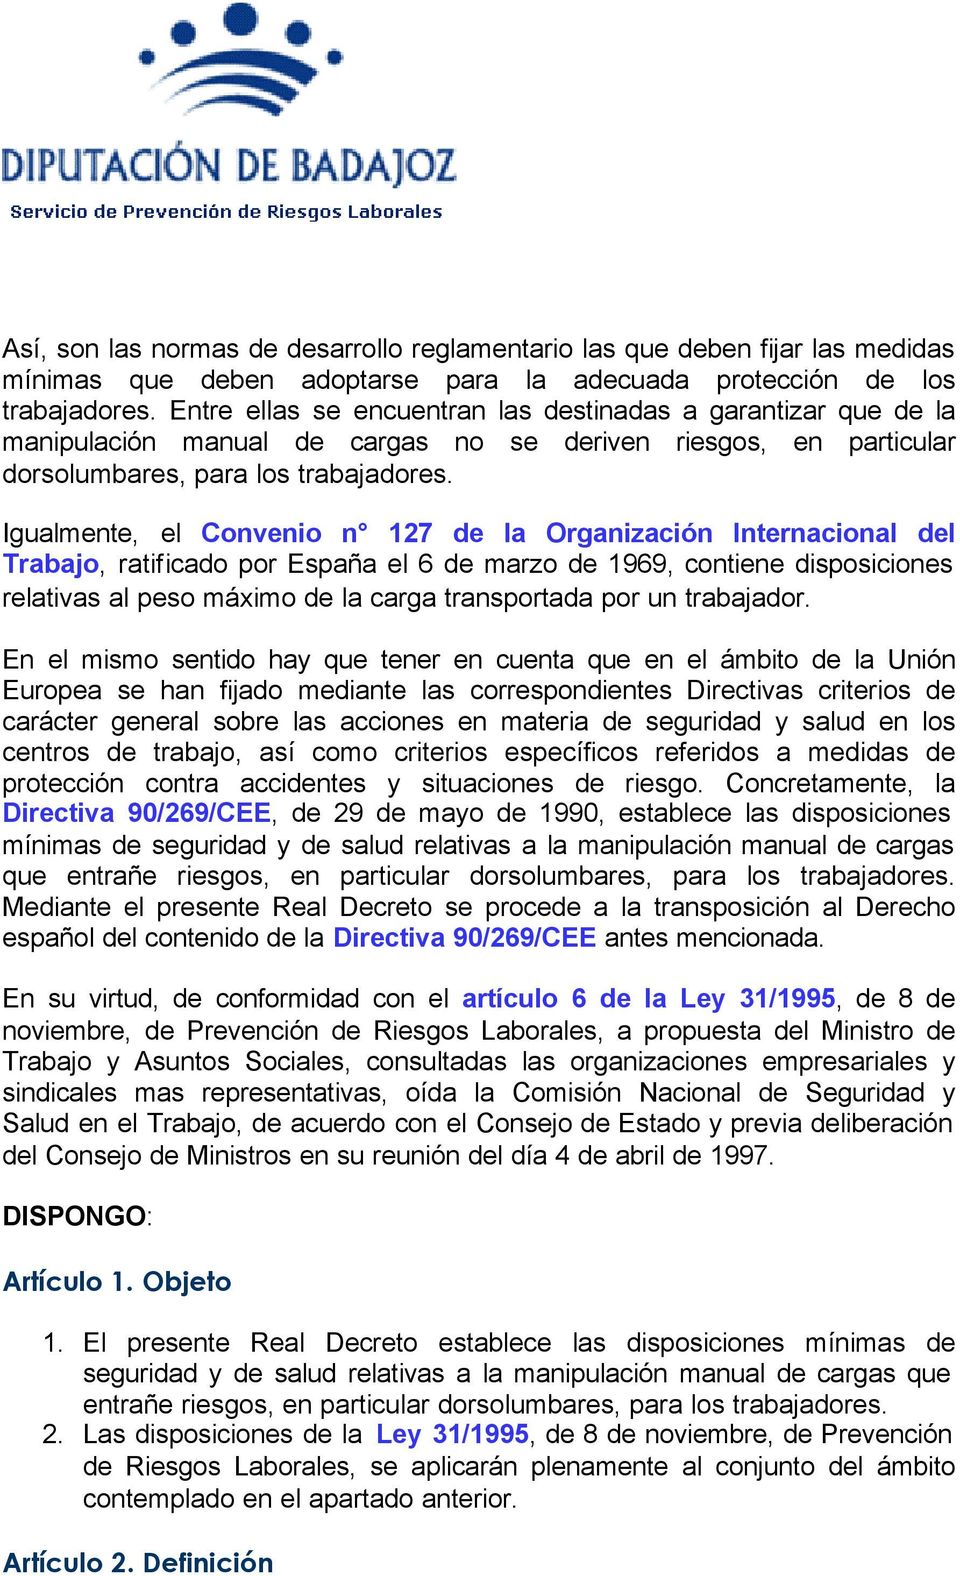 Igualmente, el Convenio n 127 de la Organización Internacional del Trabajo, ratificado por España el 6 de marzo de 1969, contiene disposiciones relativas al peso máximo de la carga transportada por